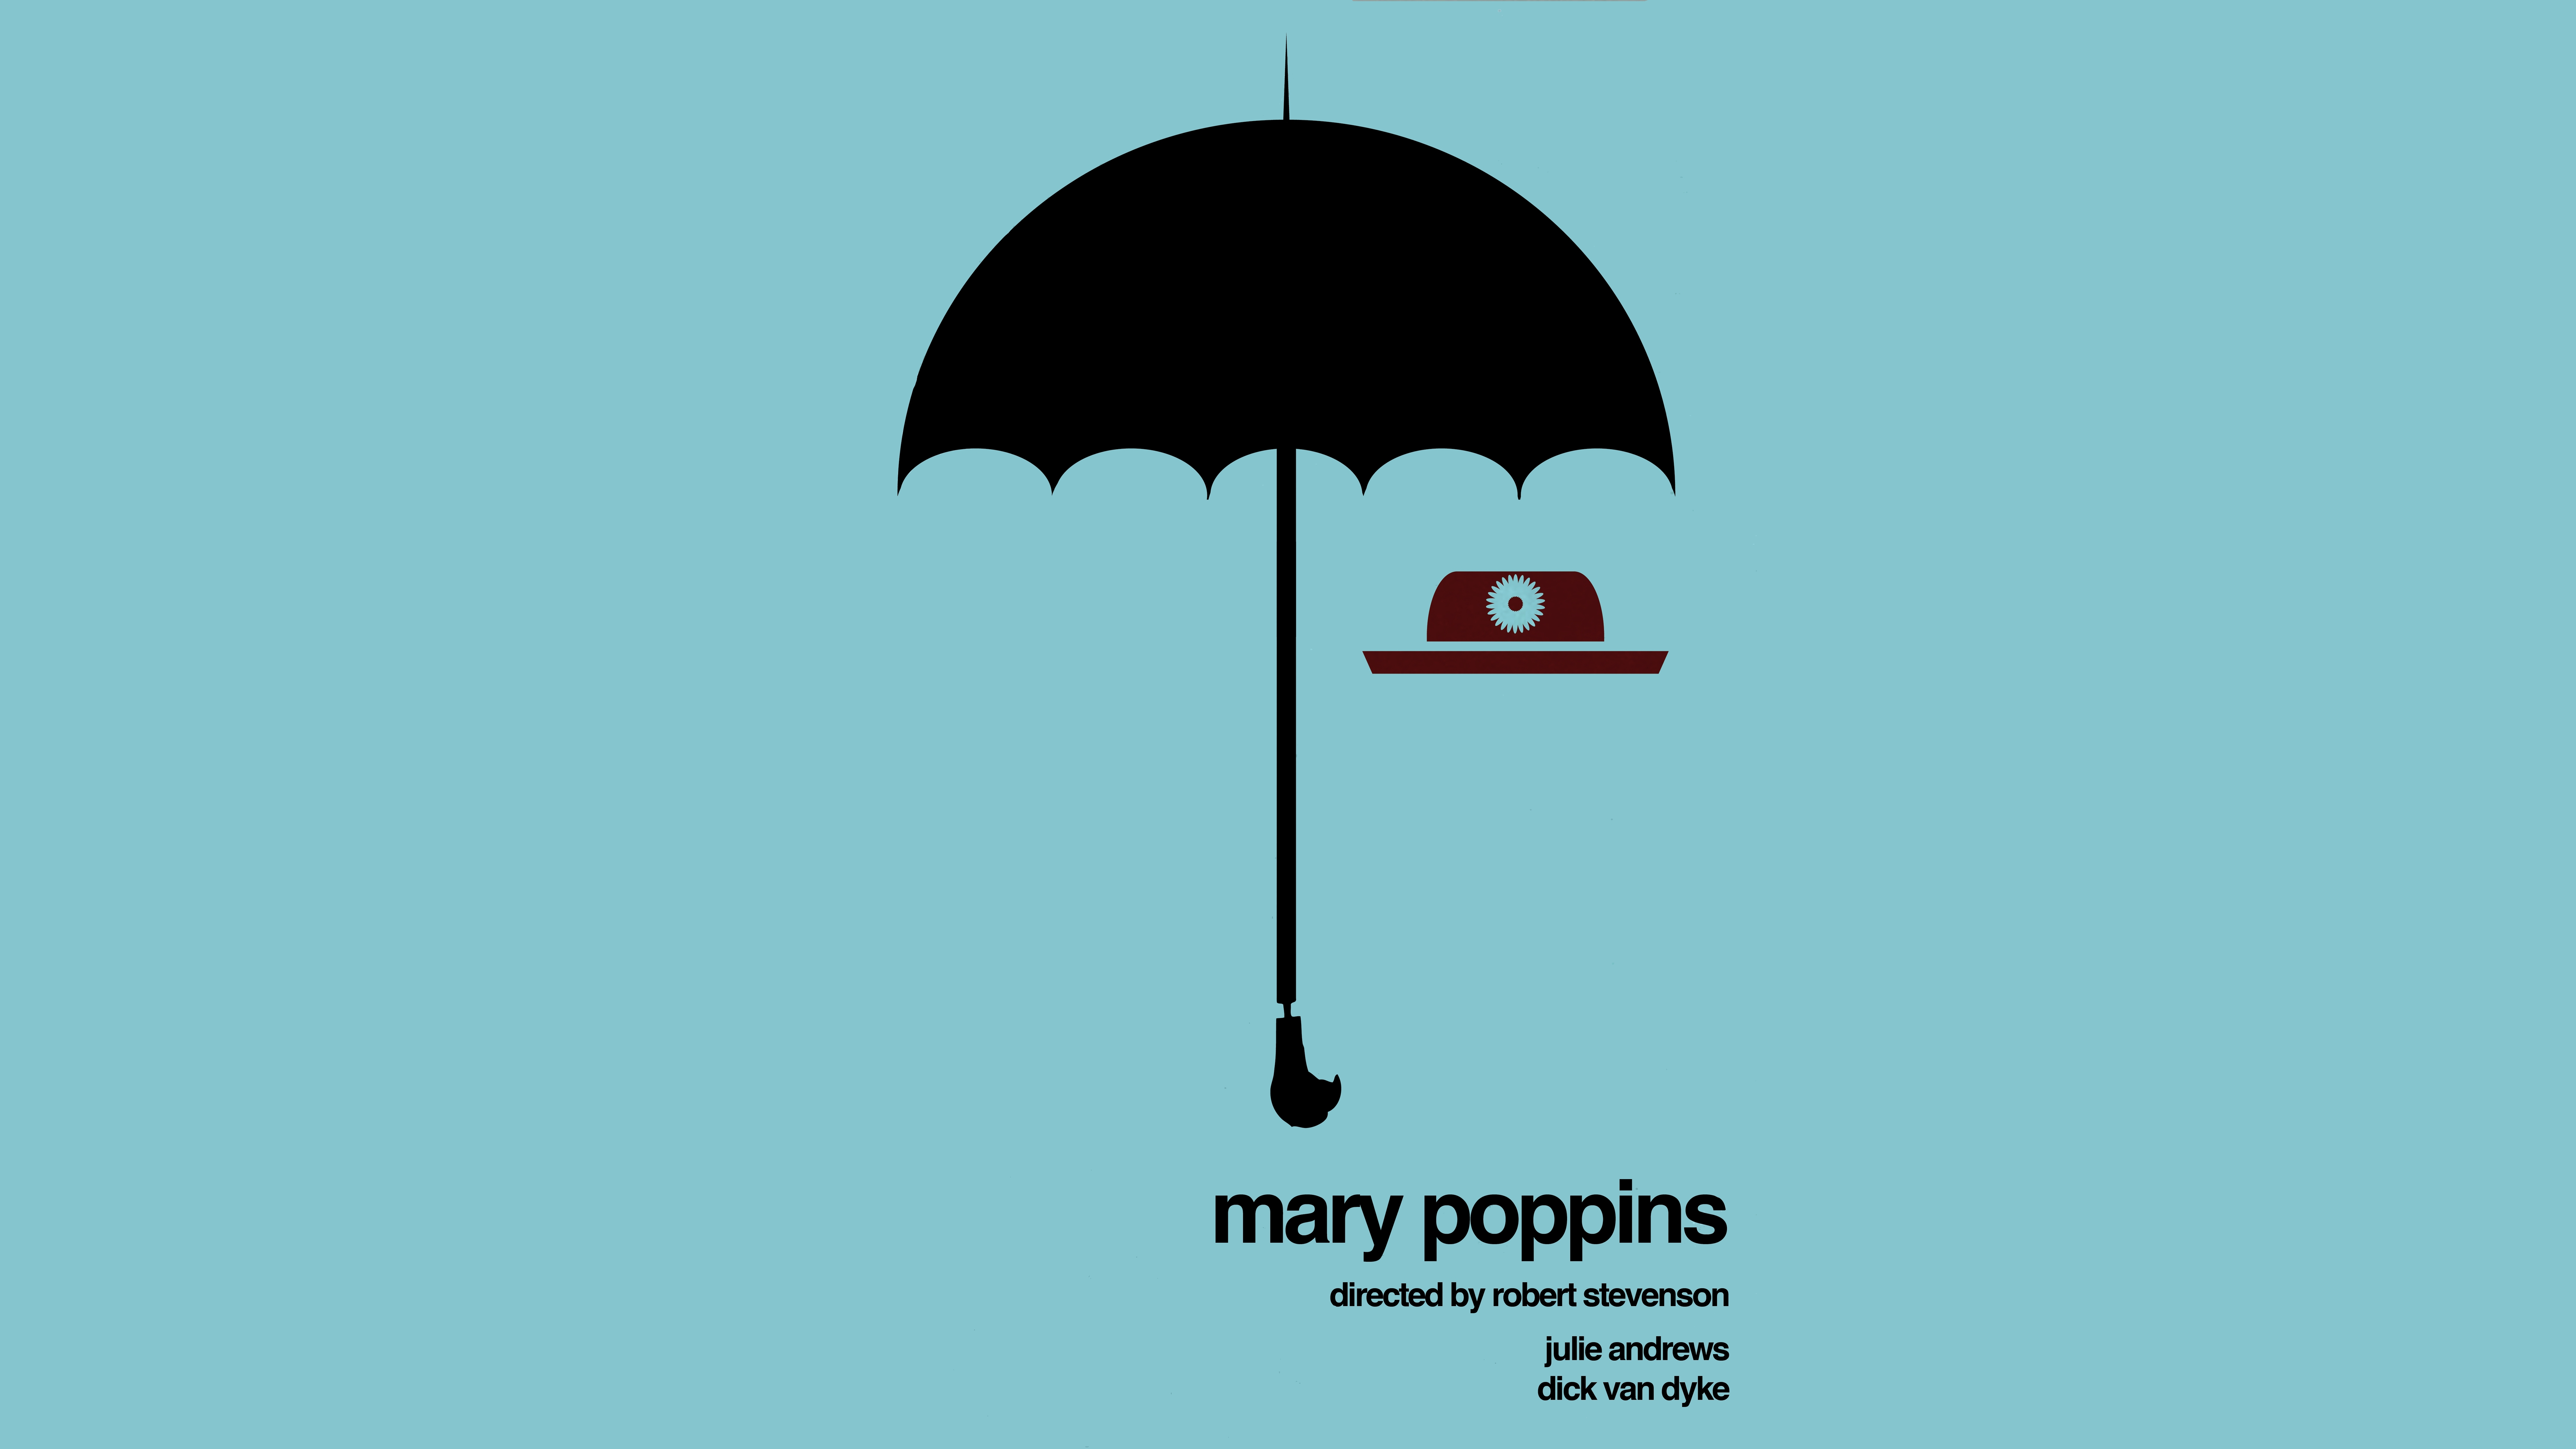 メアリーポピンズ壁紙,傘,青い,製品,図,ターコイズ